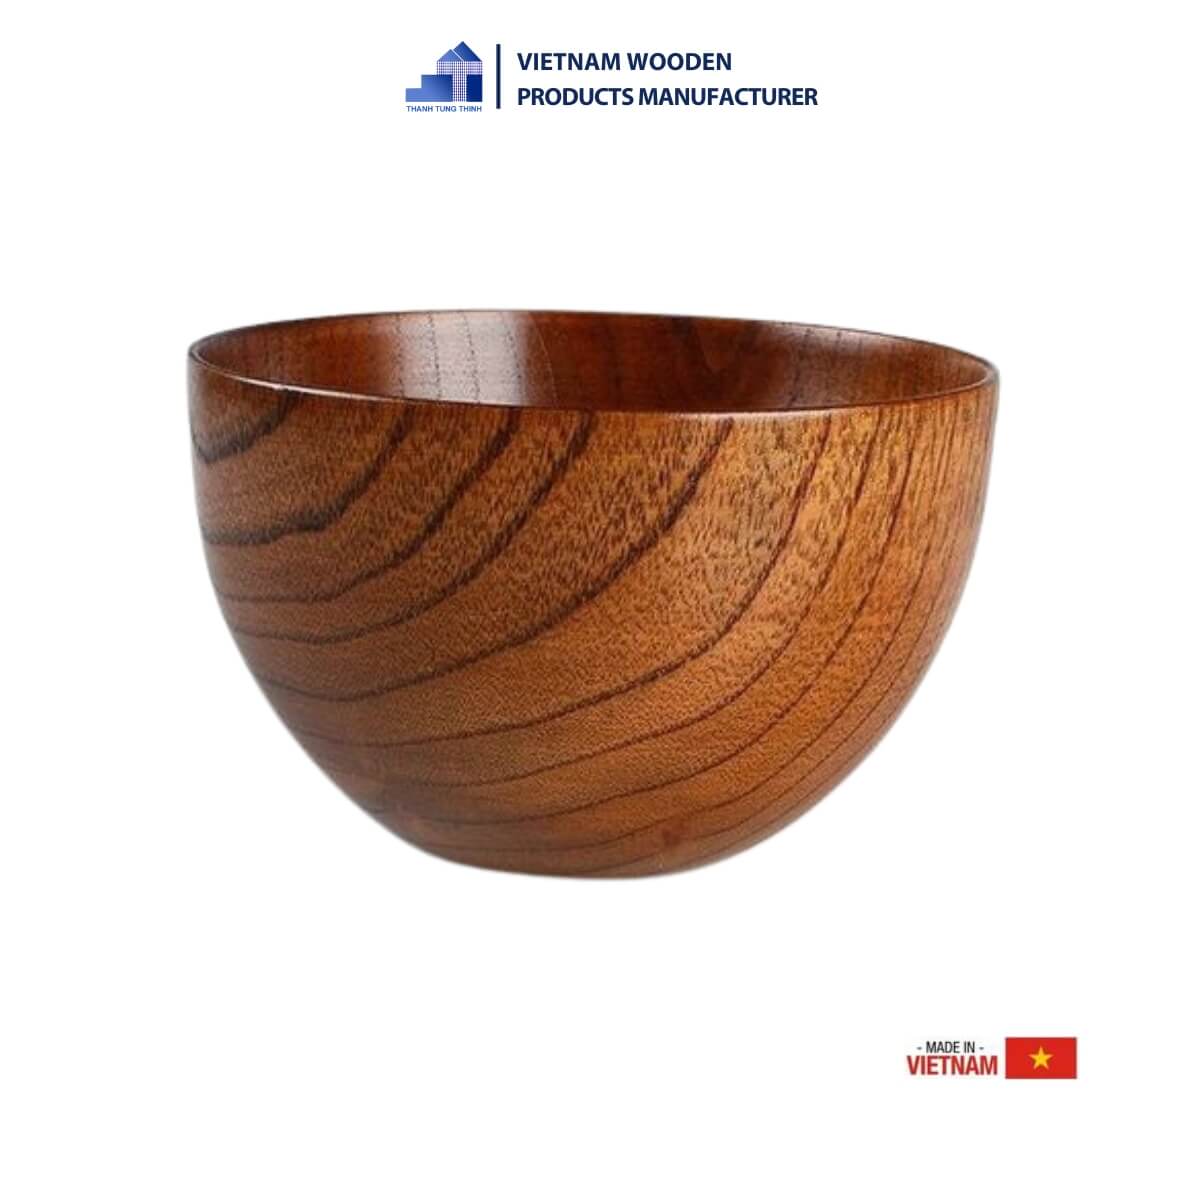 Simple yet Elegant Wooden Bowl for children.